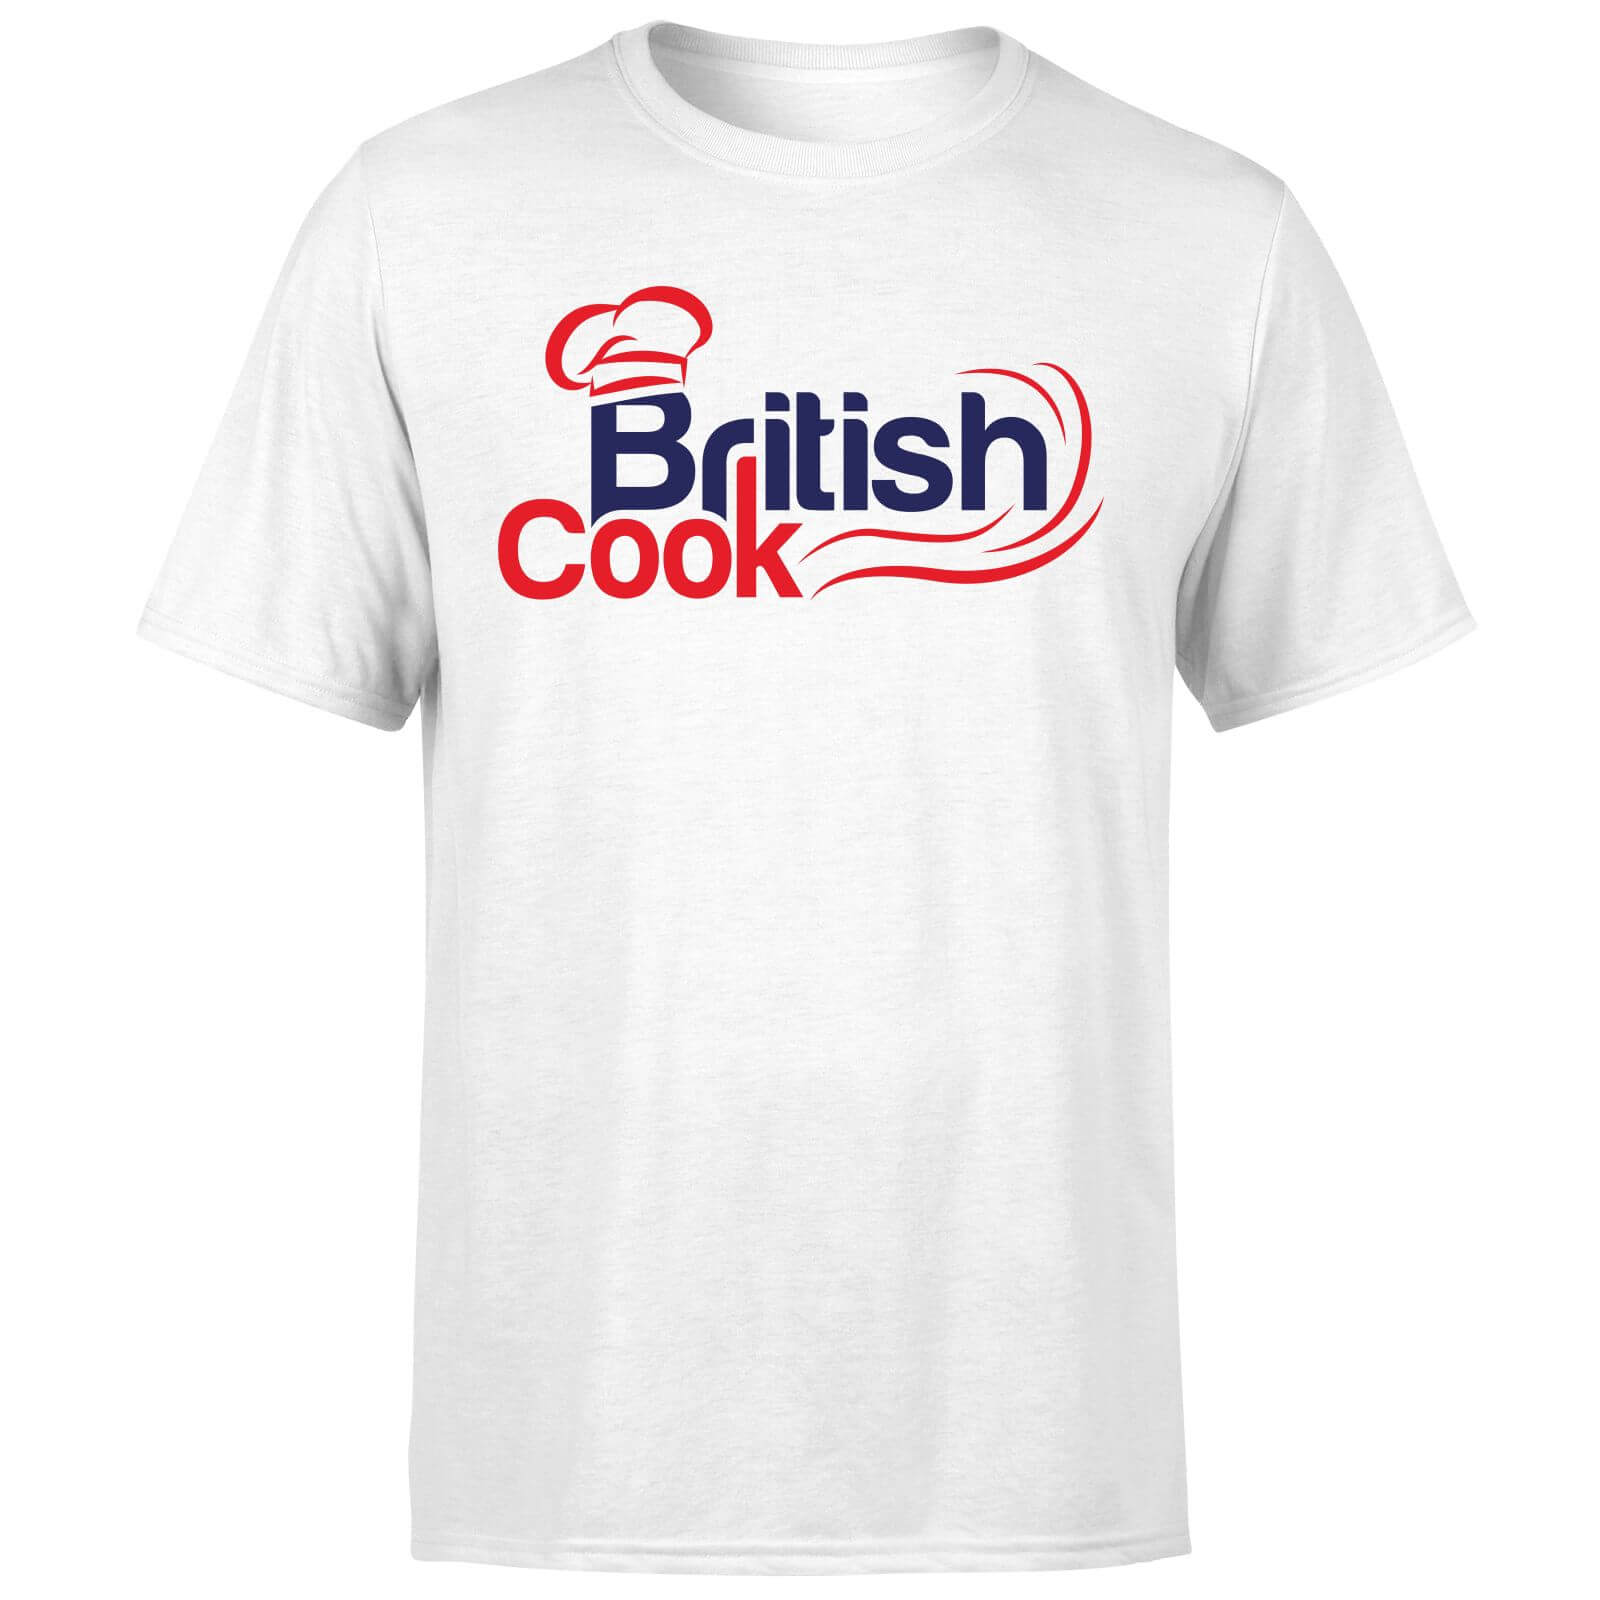 British Cook Red Mens T Shirt White M White